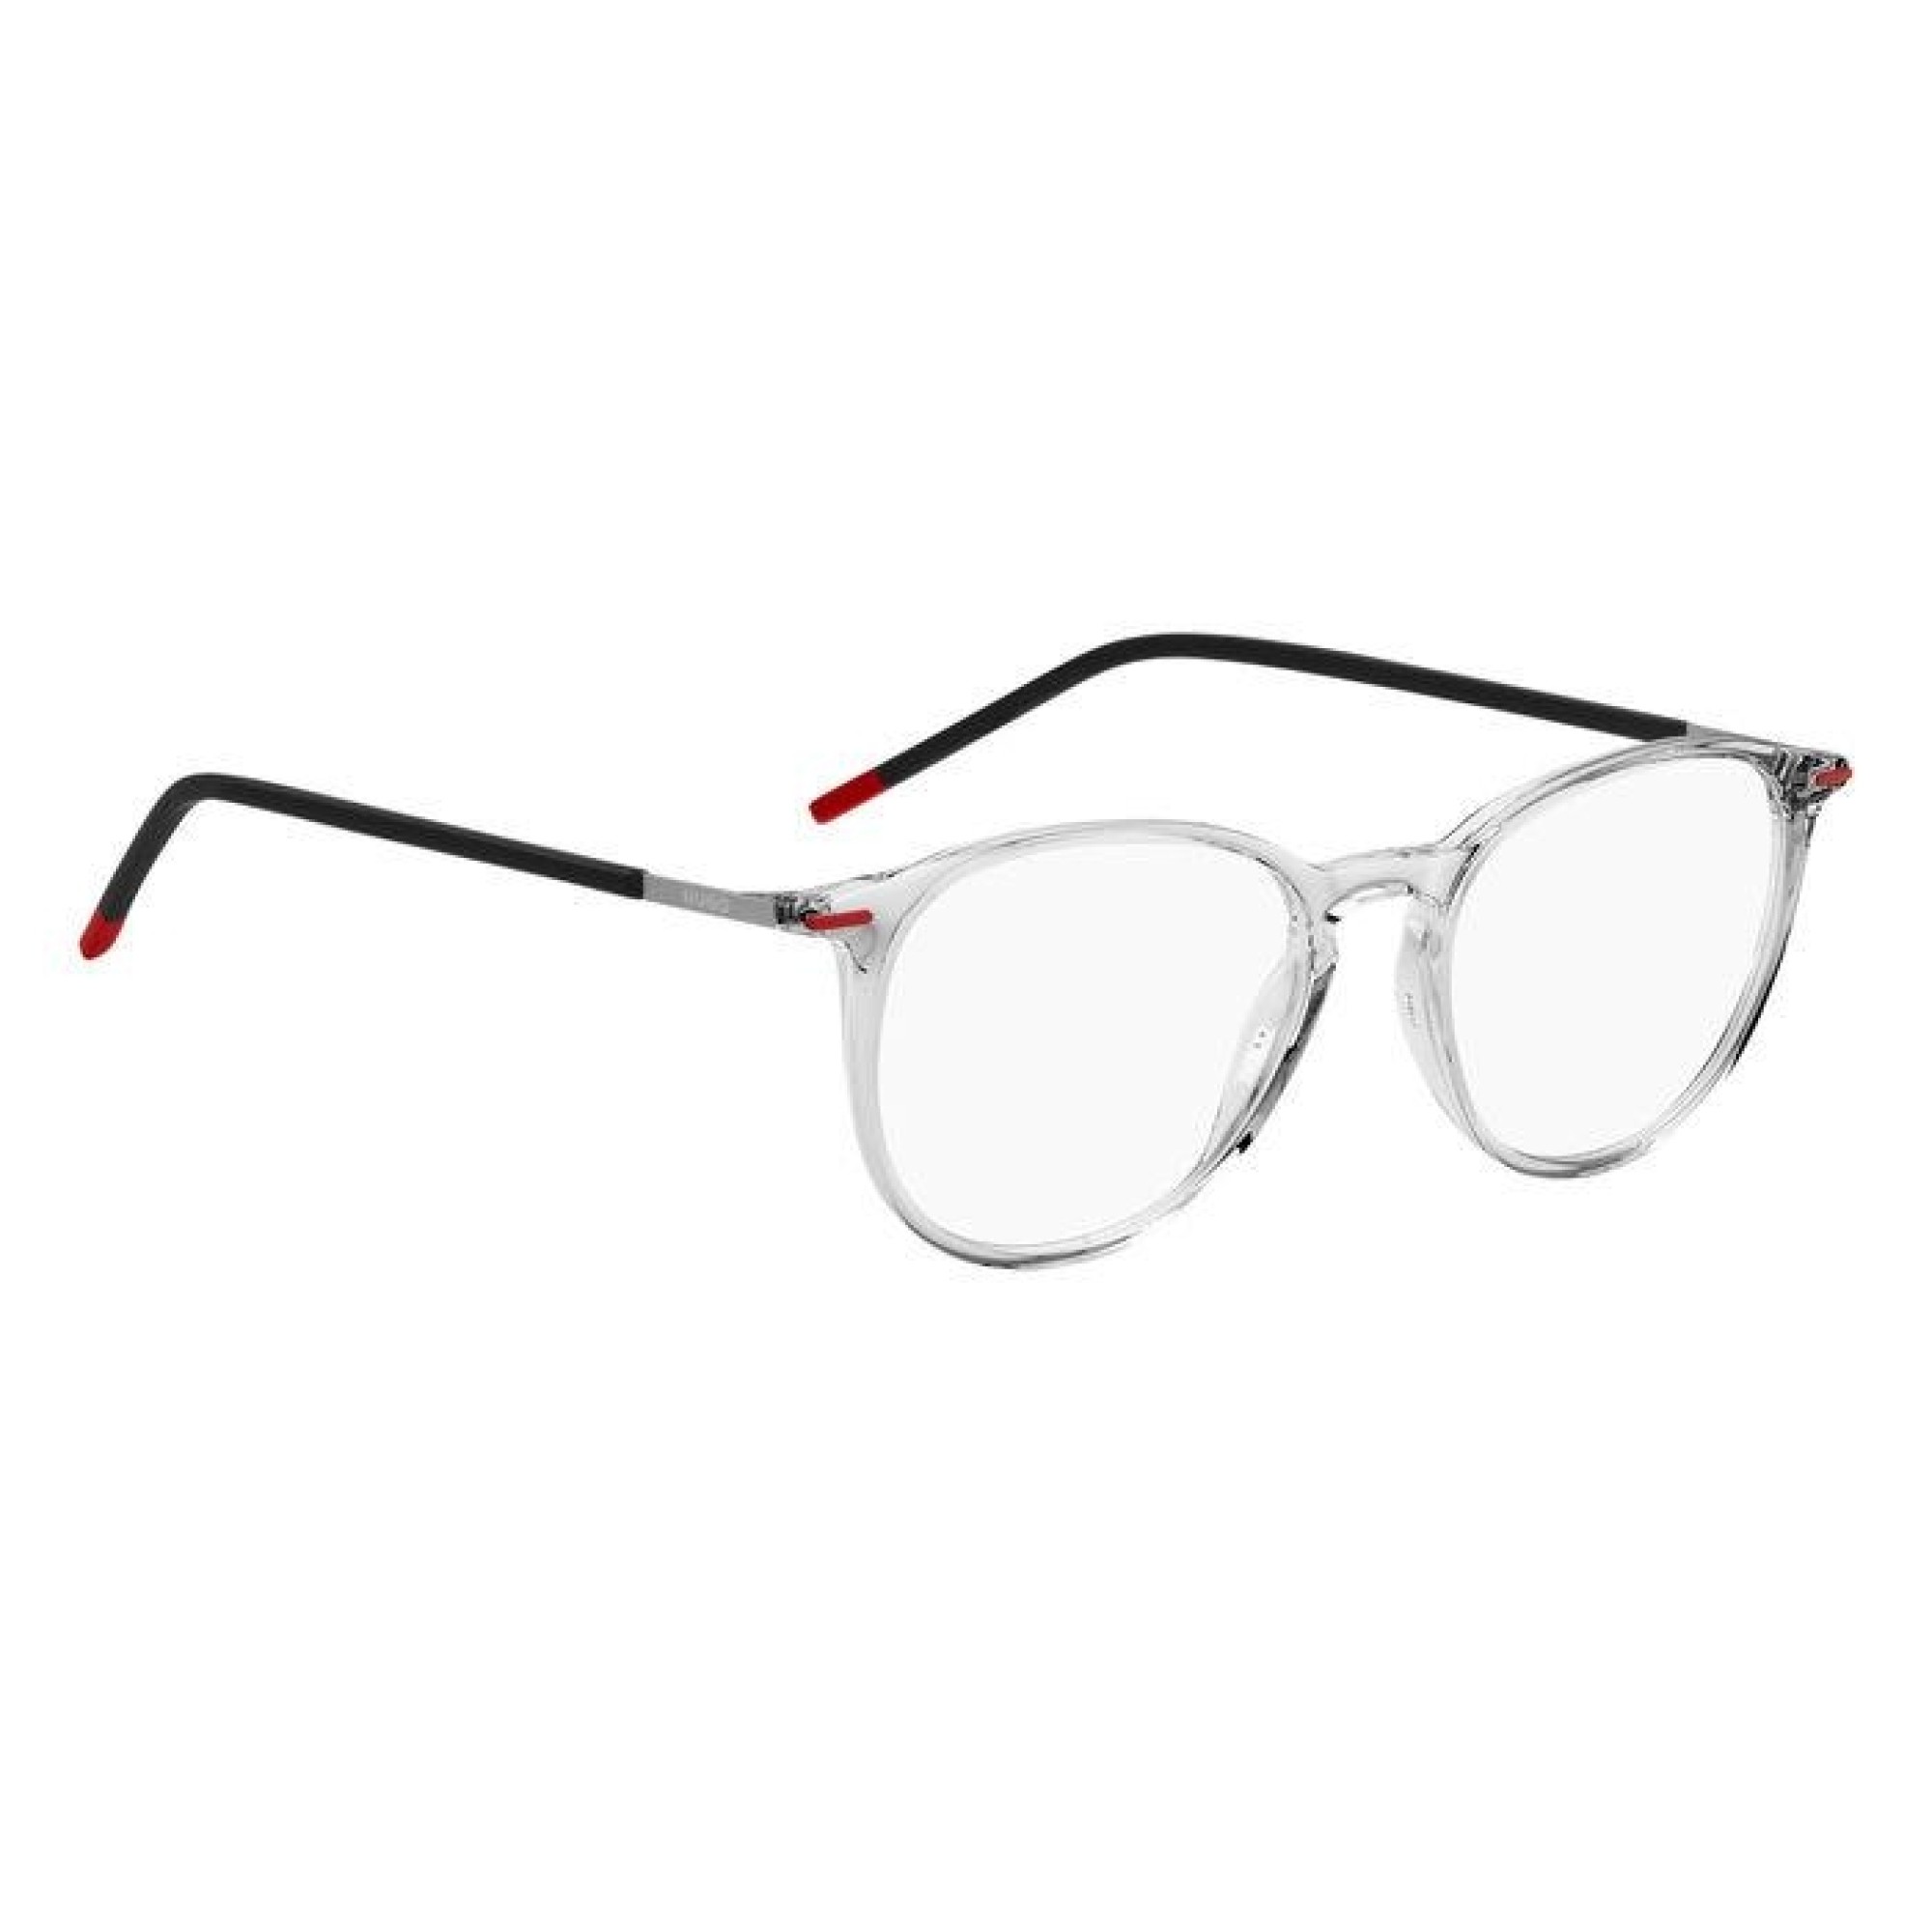 Hugo Boss HG 1233 - 900 Crystal | Eyeglasses Man